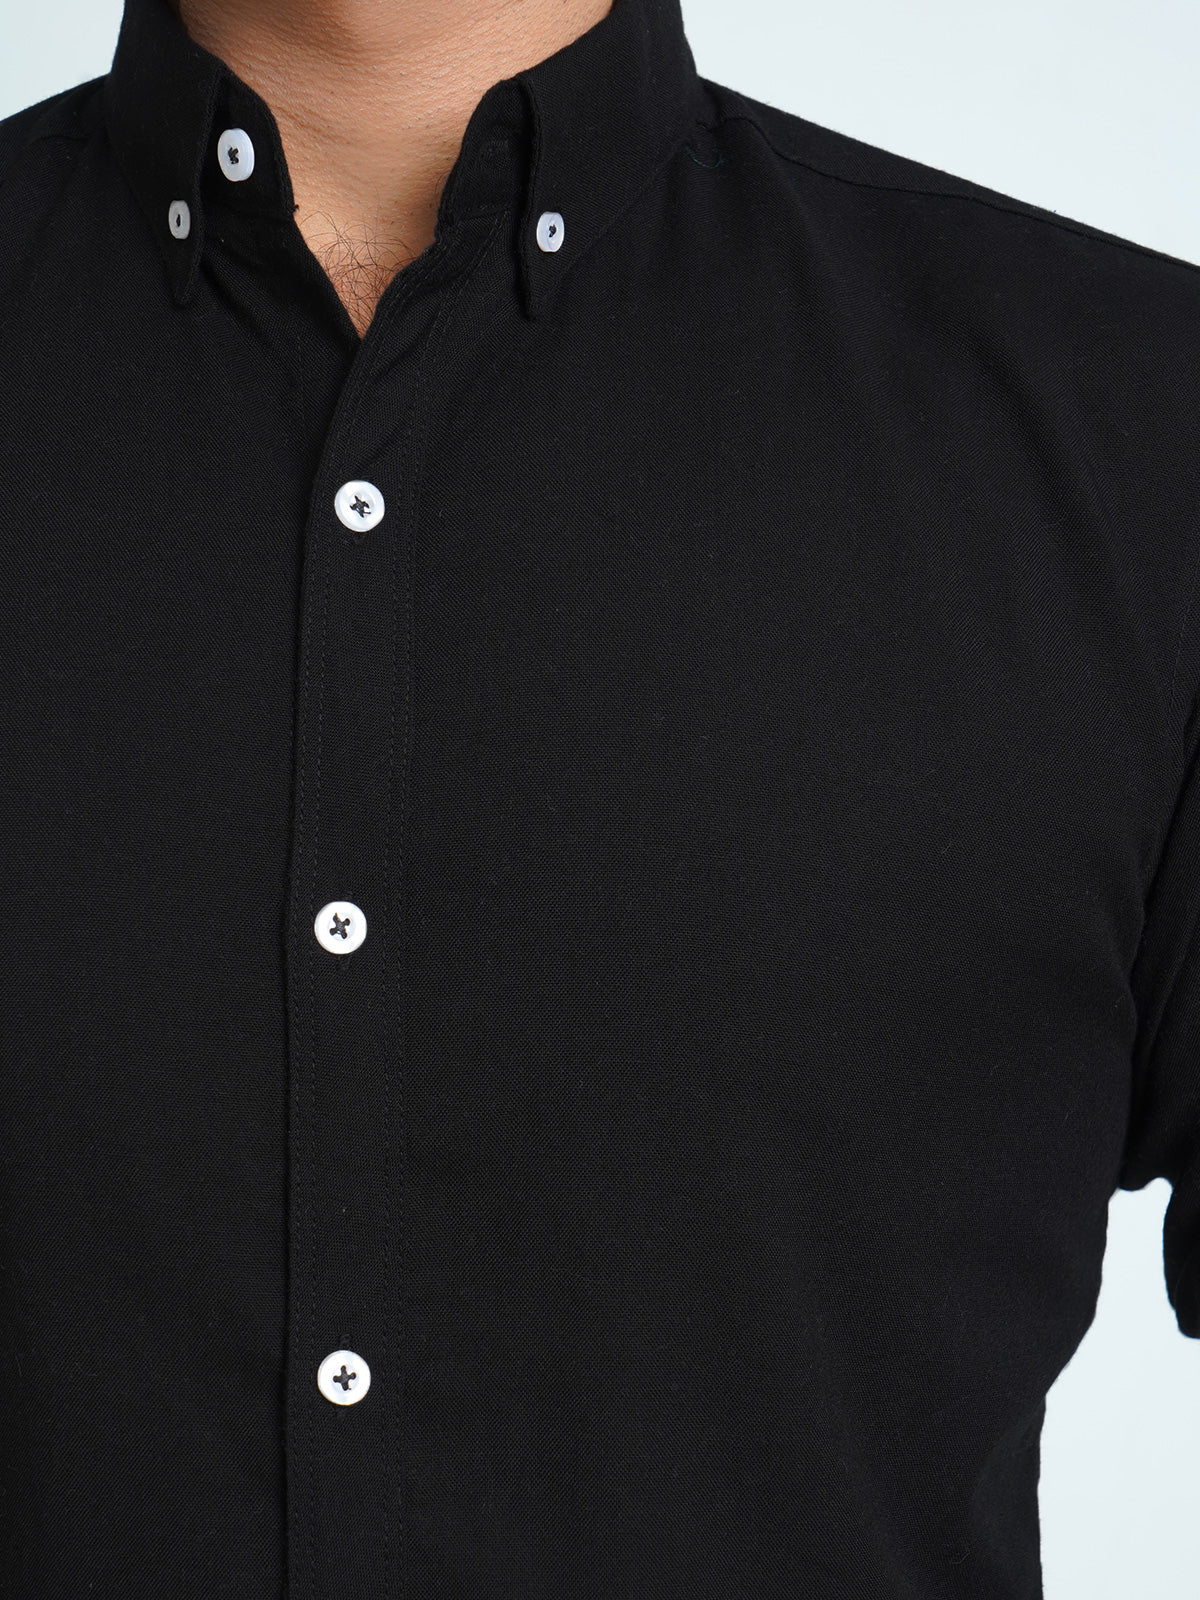 Black Plain Button Down Casual Shirt (CSB-135)